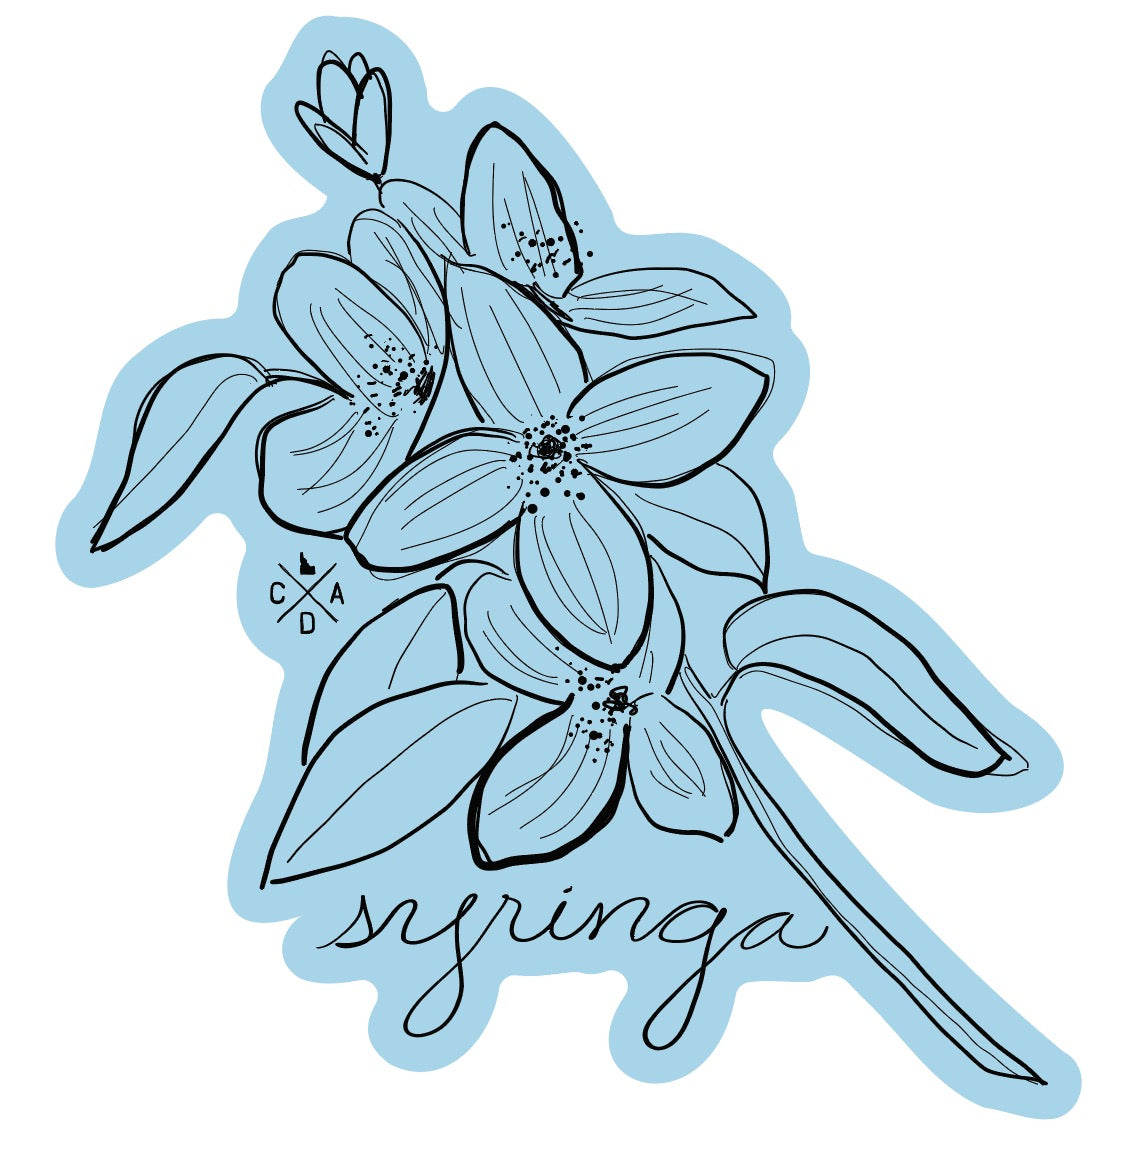 Idaho Native Plants: Syringa Sticker